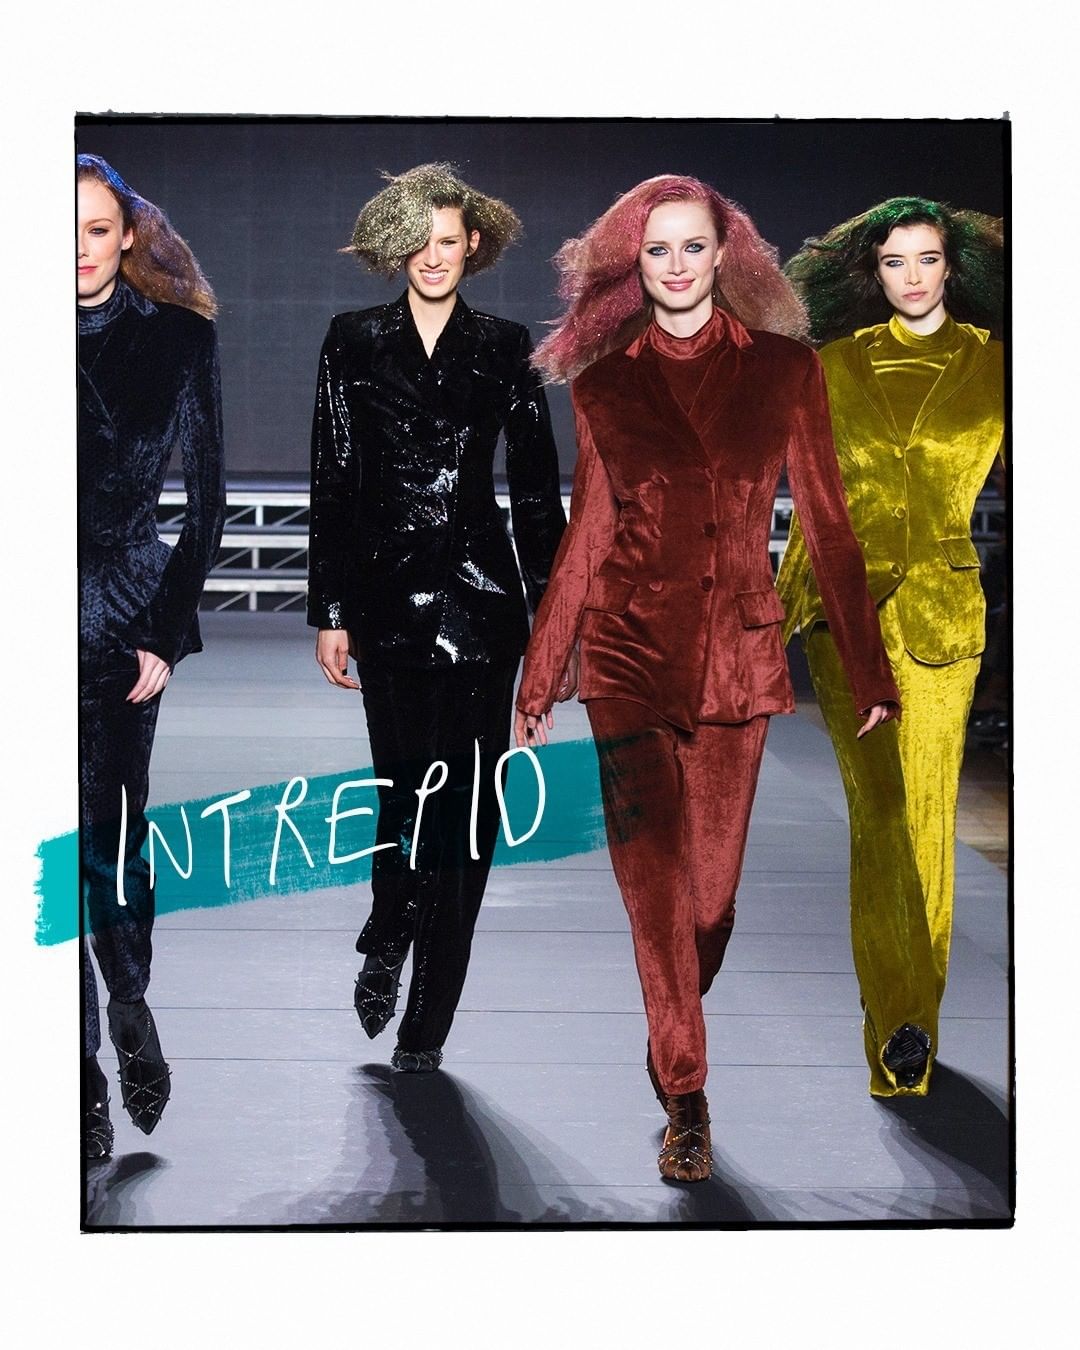 Sonia Rykiel - INTREPID. Velvet Underground.
🐾
À pas de velours.
#SoniaRykiel #FollowTheStripes #FW2018 #FashionWeek #Mode